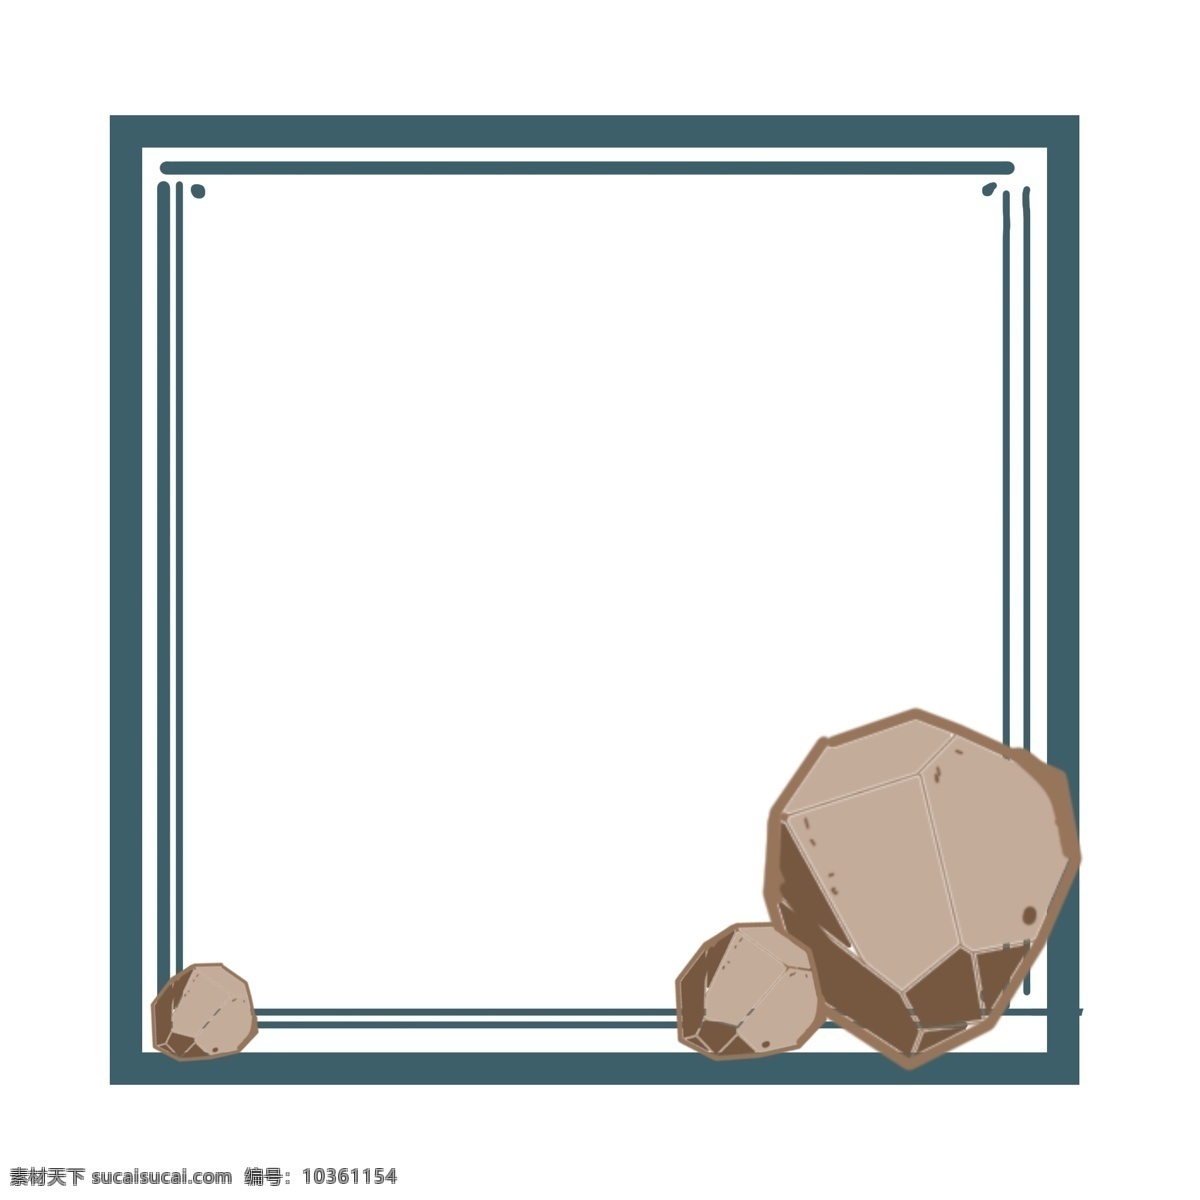 方形 小 石块 深蓝色 边框 贴画 卡通 文件 石头 可爱 高清 手绘 源文件 自然 自然的 png格式 锋利的石头